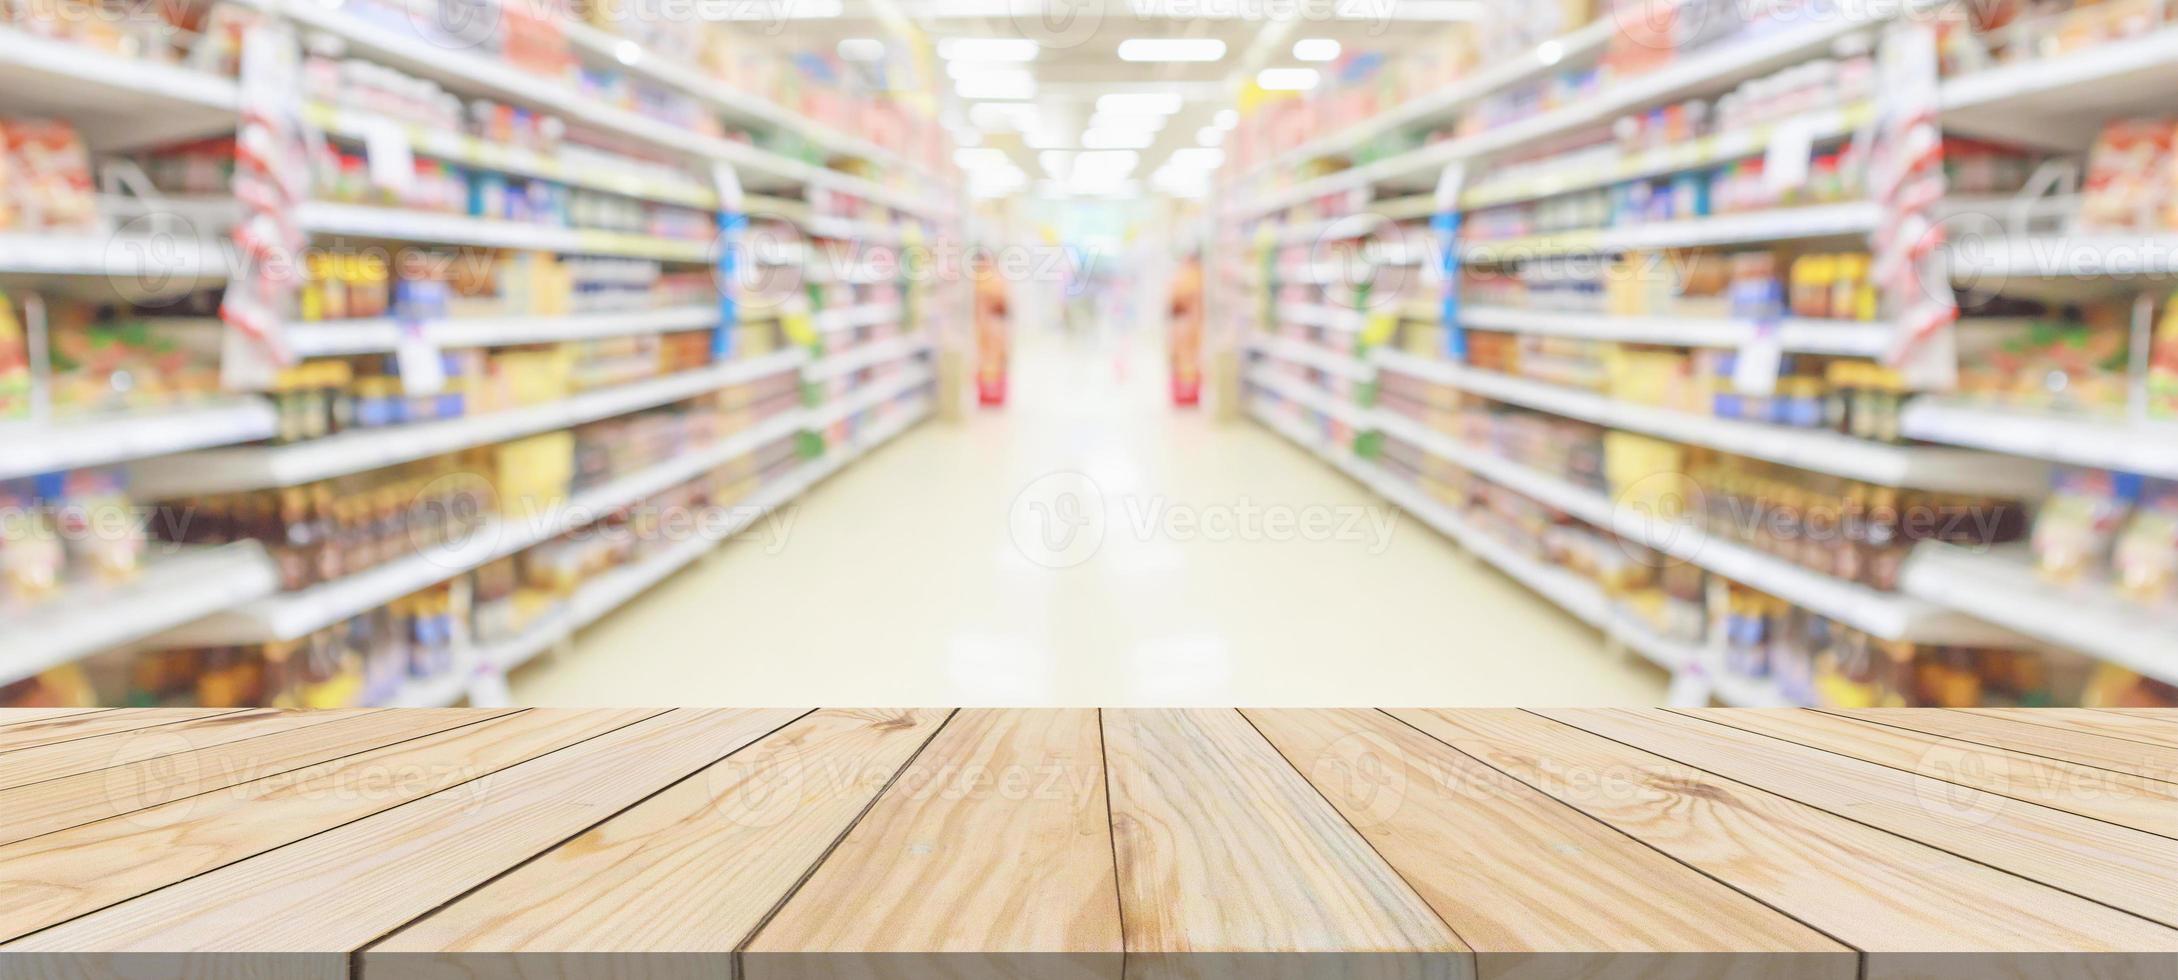 dessus de table en bois avec supermarché épicerie allée intérieur arrière-plan flou avec lumière bokeh pour l'affichage du produit photo